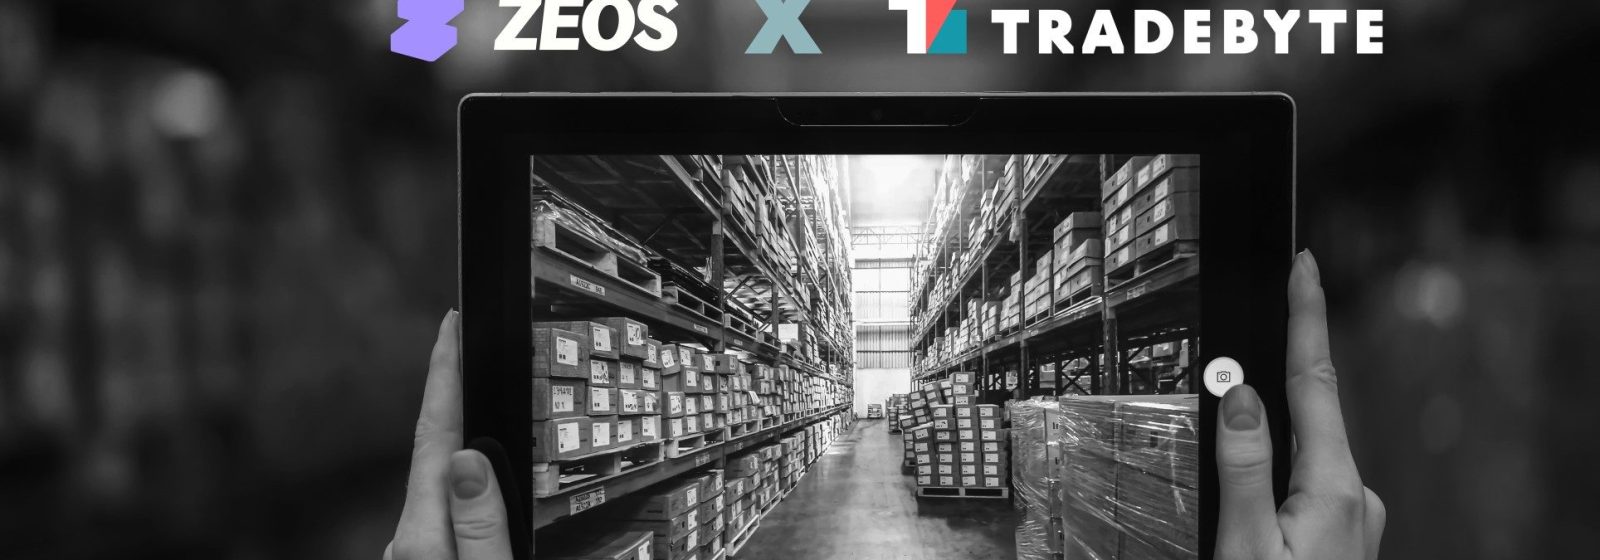 Zalando verenigt marketplace-integrator Tradebyte met de fulfilmentservice ZEOS.